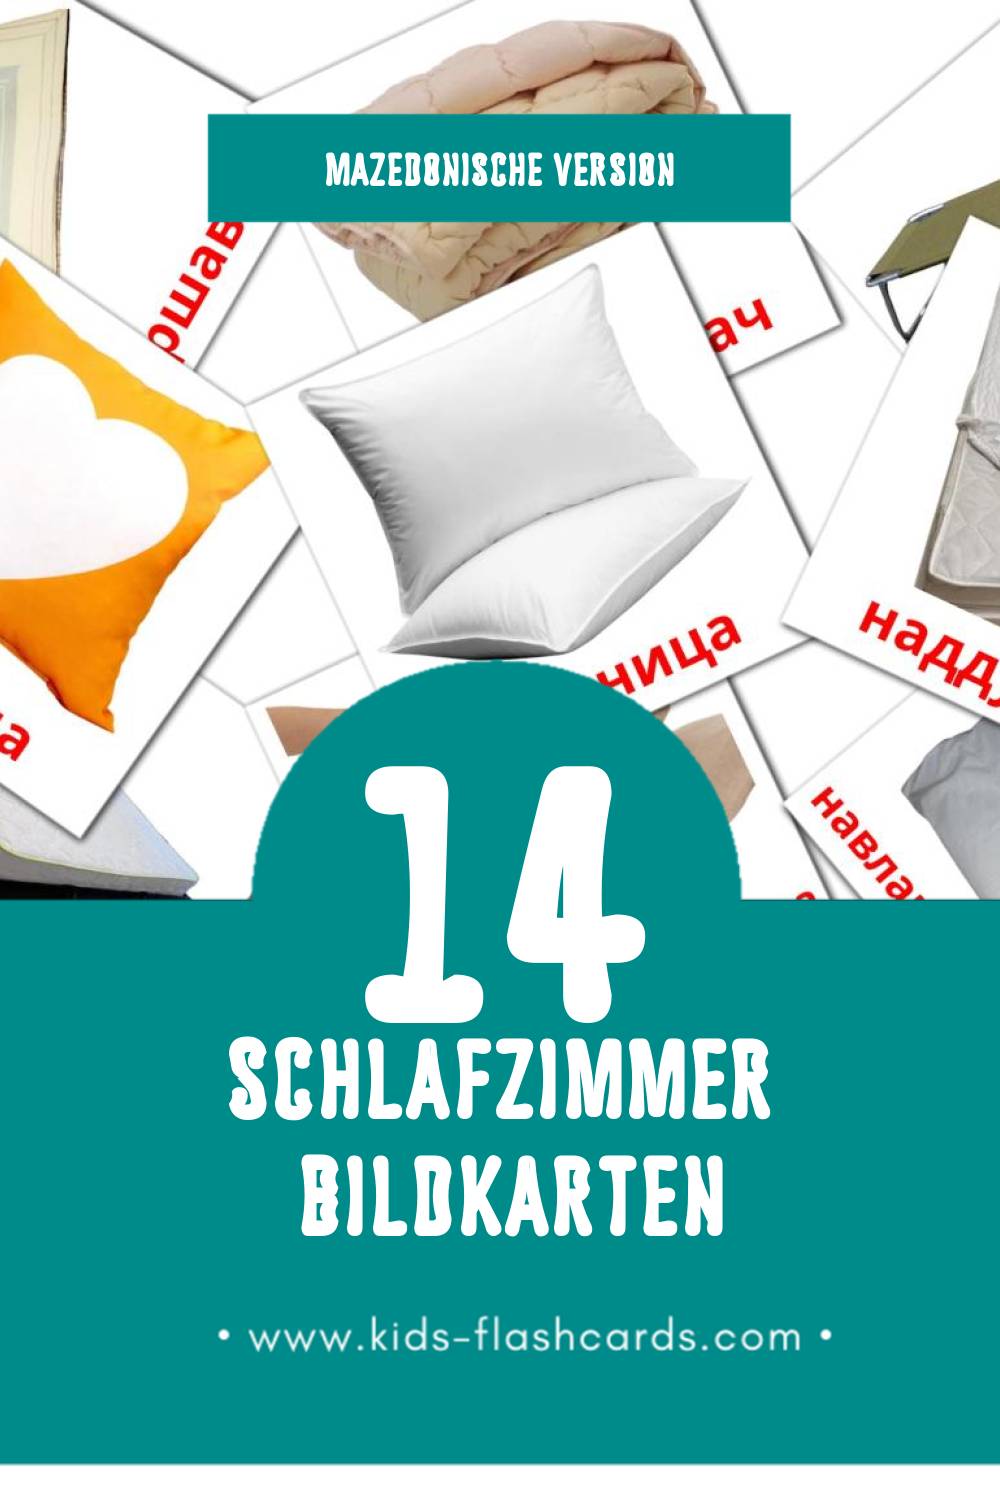 Visual Спална соба Flashcards für Kleinkinder (14 Karten in Mazedonisch)